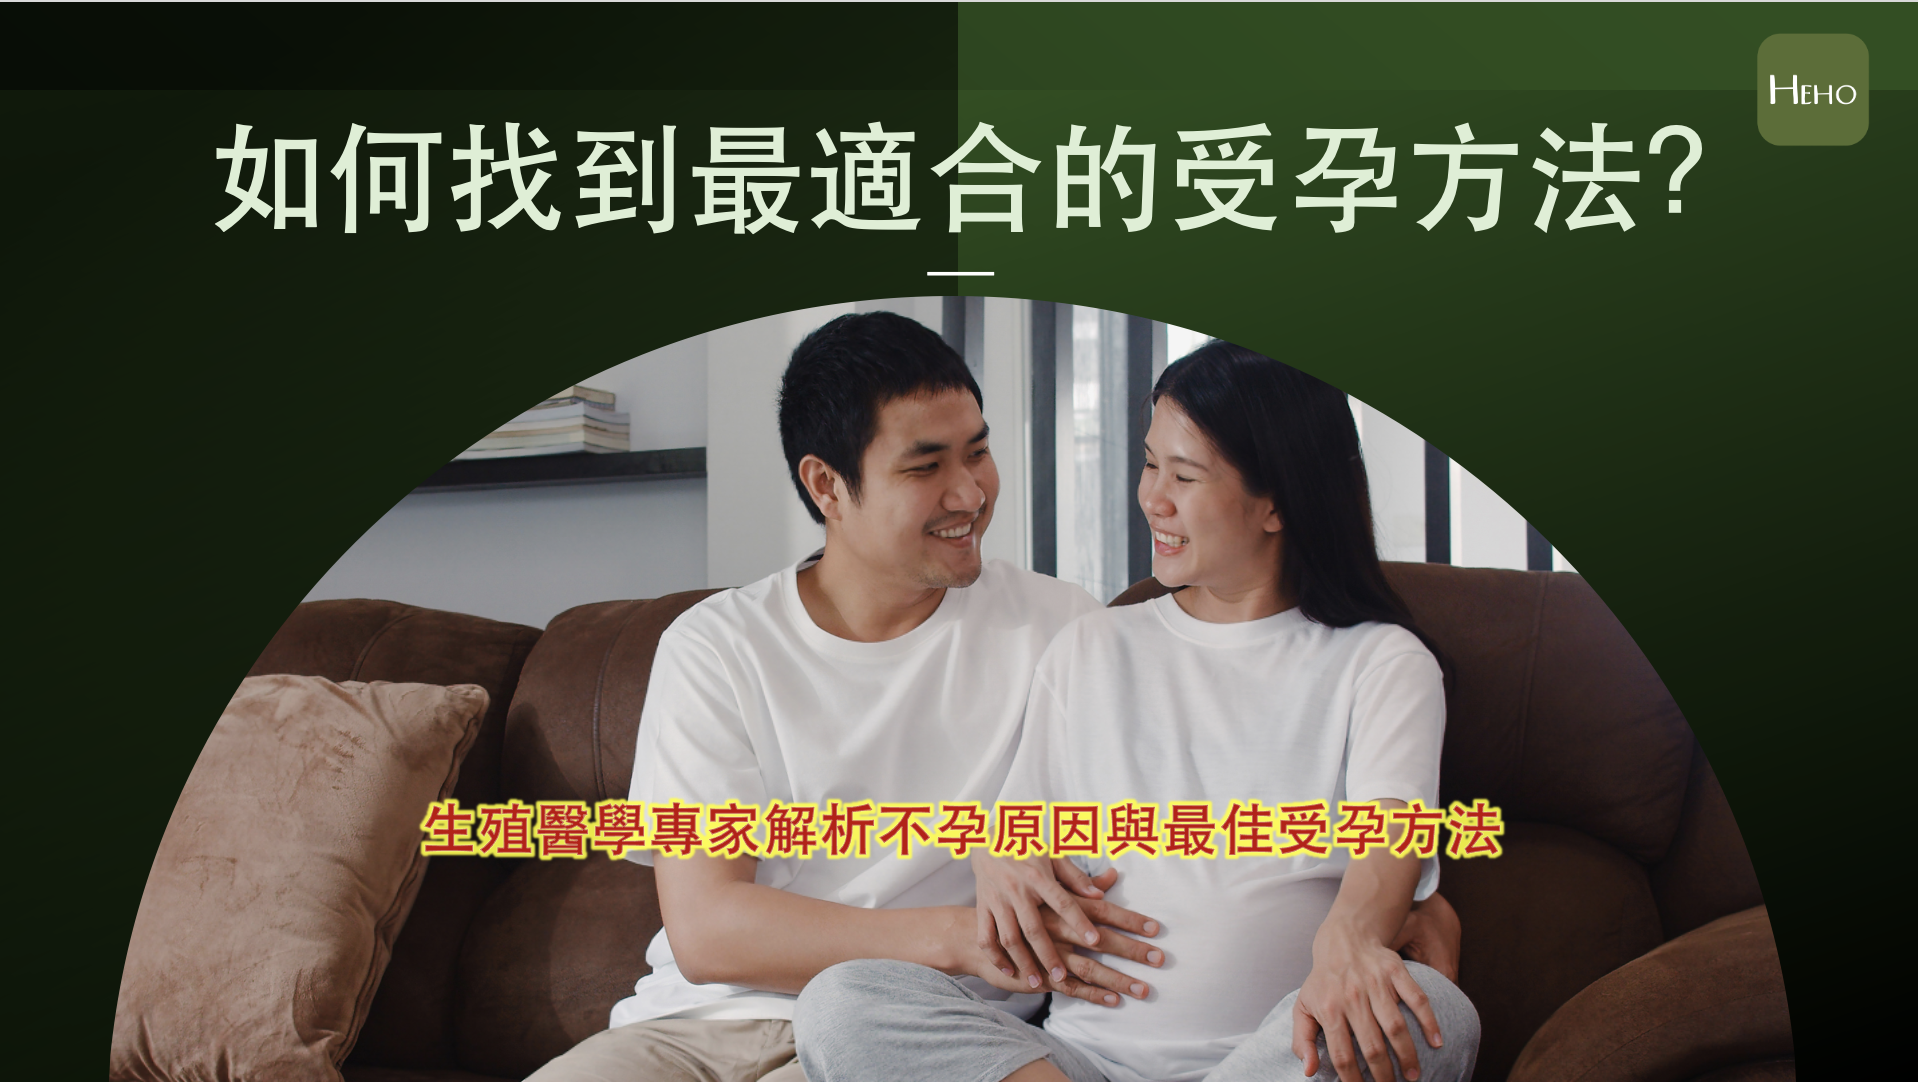 Xã hội Đài Loan hiện nay có xu hướng kết hôn và sinh con muộn. Theo thống kê của Bộ Nội chính Đài Loan, tuổi trung bình sinh con lần đầu của phụ nữ là 31,43 tuổi, trong đó, tỷ lệ phụ nữ trên 35 tuổi chiếm 32,44%. (Ảnh: Cung cấp bởi HEHO)